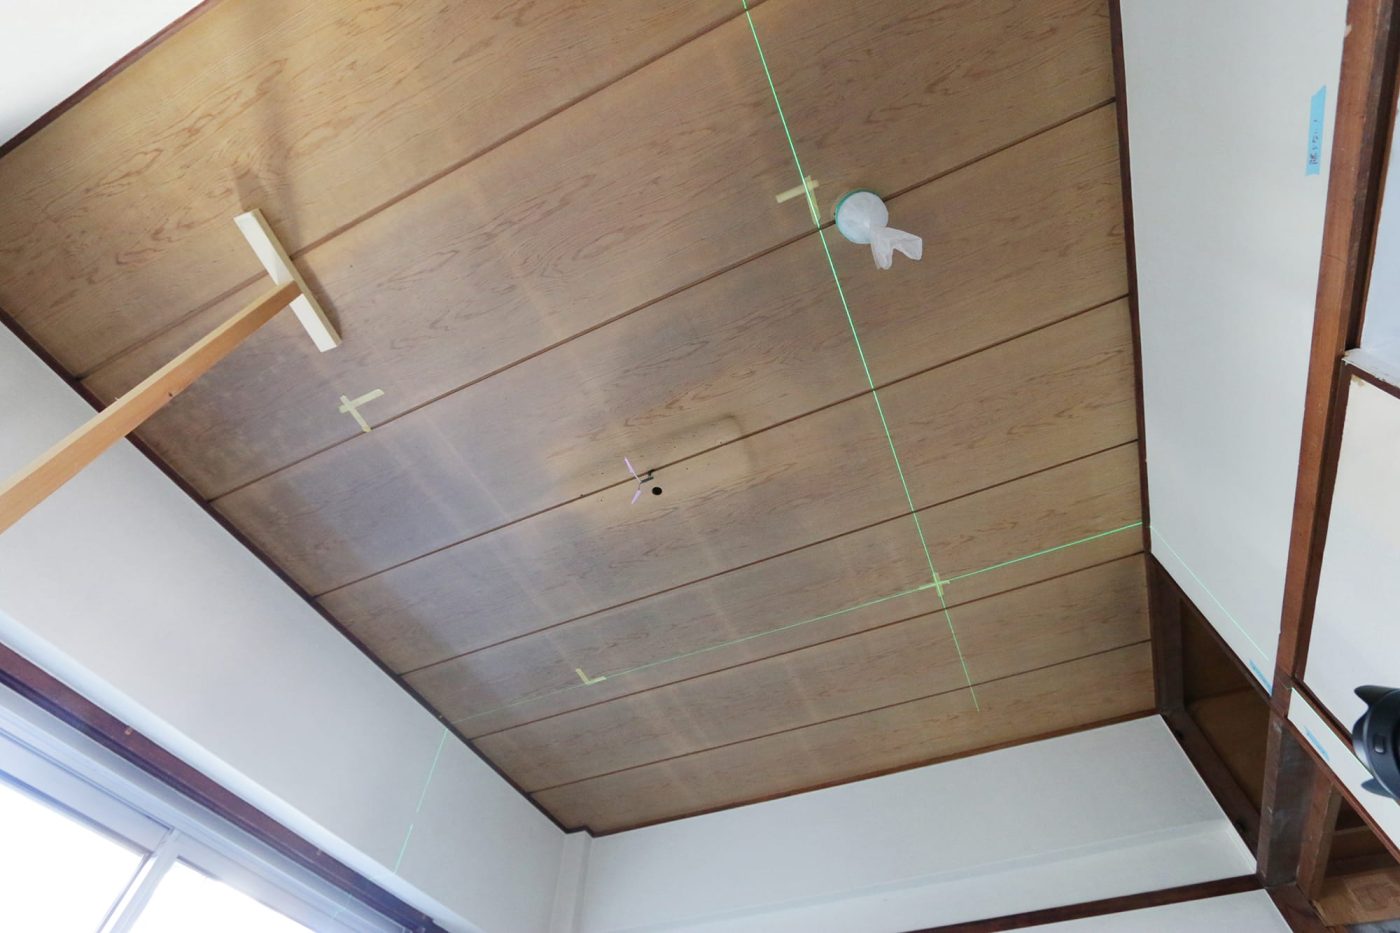 左側にあるT型に組んだ角材は、天井のたわみを抑えるために現場で作った即席つっぱり棒。